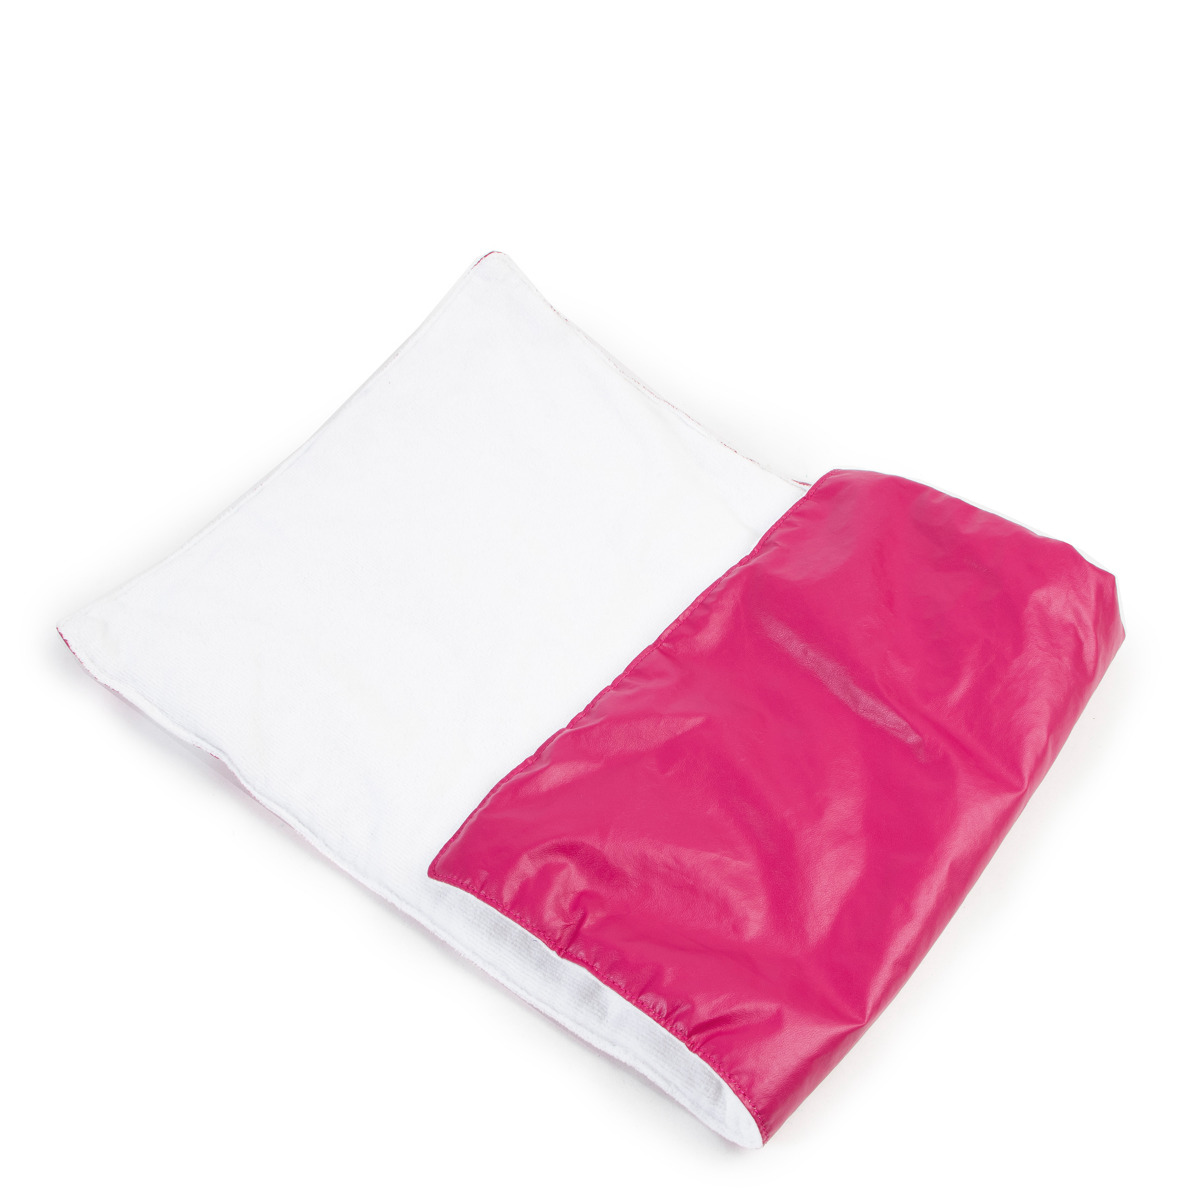 GUCCI GG Supreme Monogram Rose Bud Diaper Bag Pink 526716